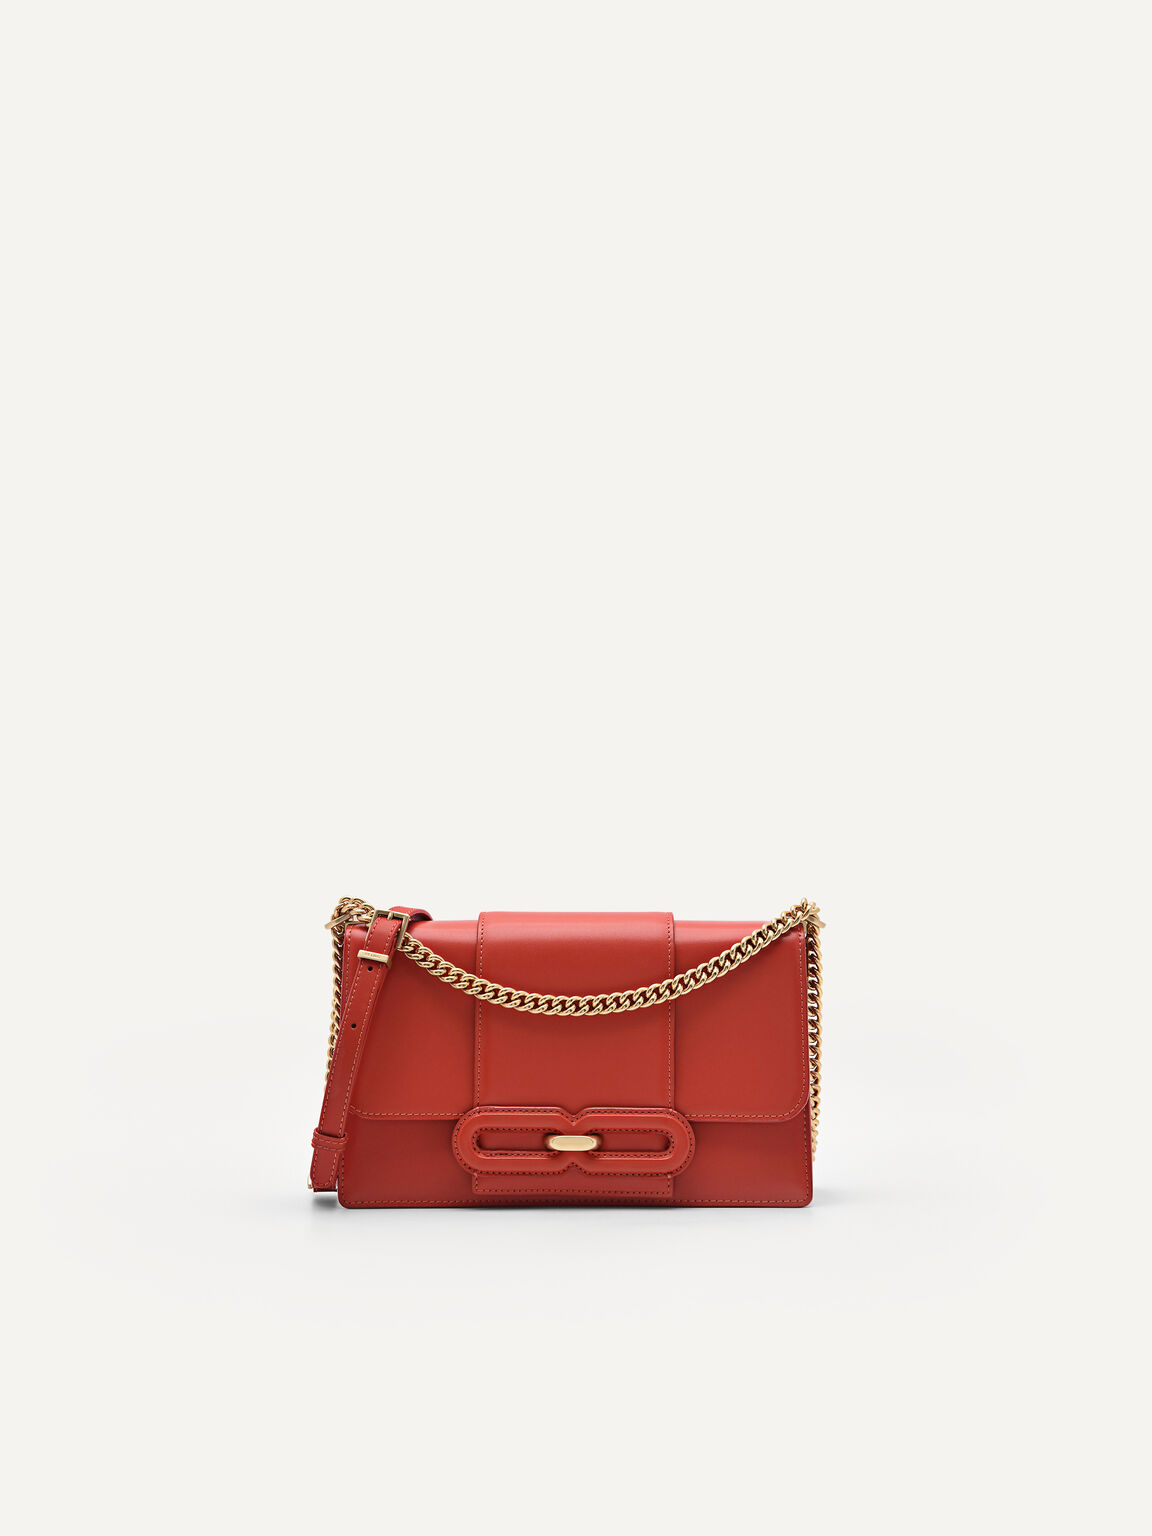 PEDRO Studio Kate Leather Shoulder Bag - Red